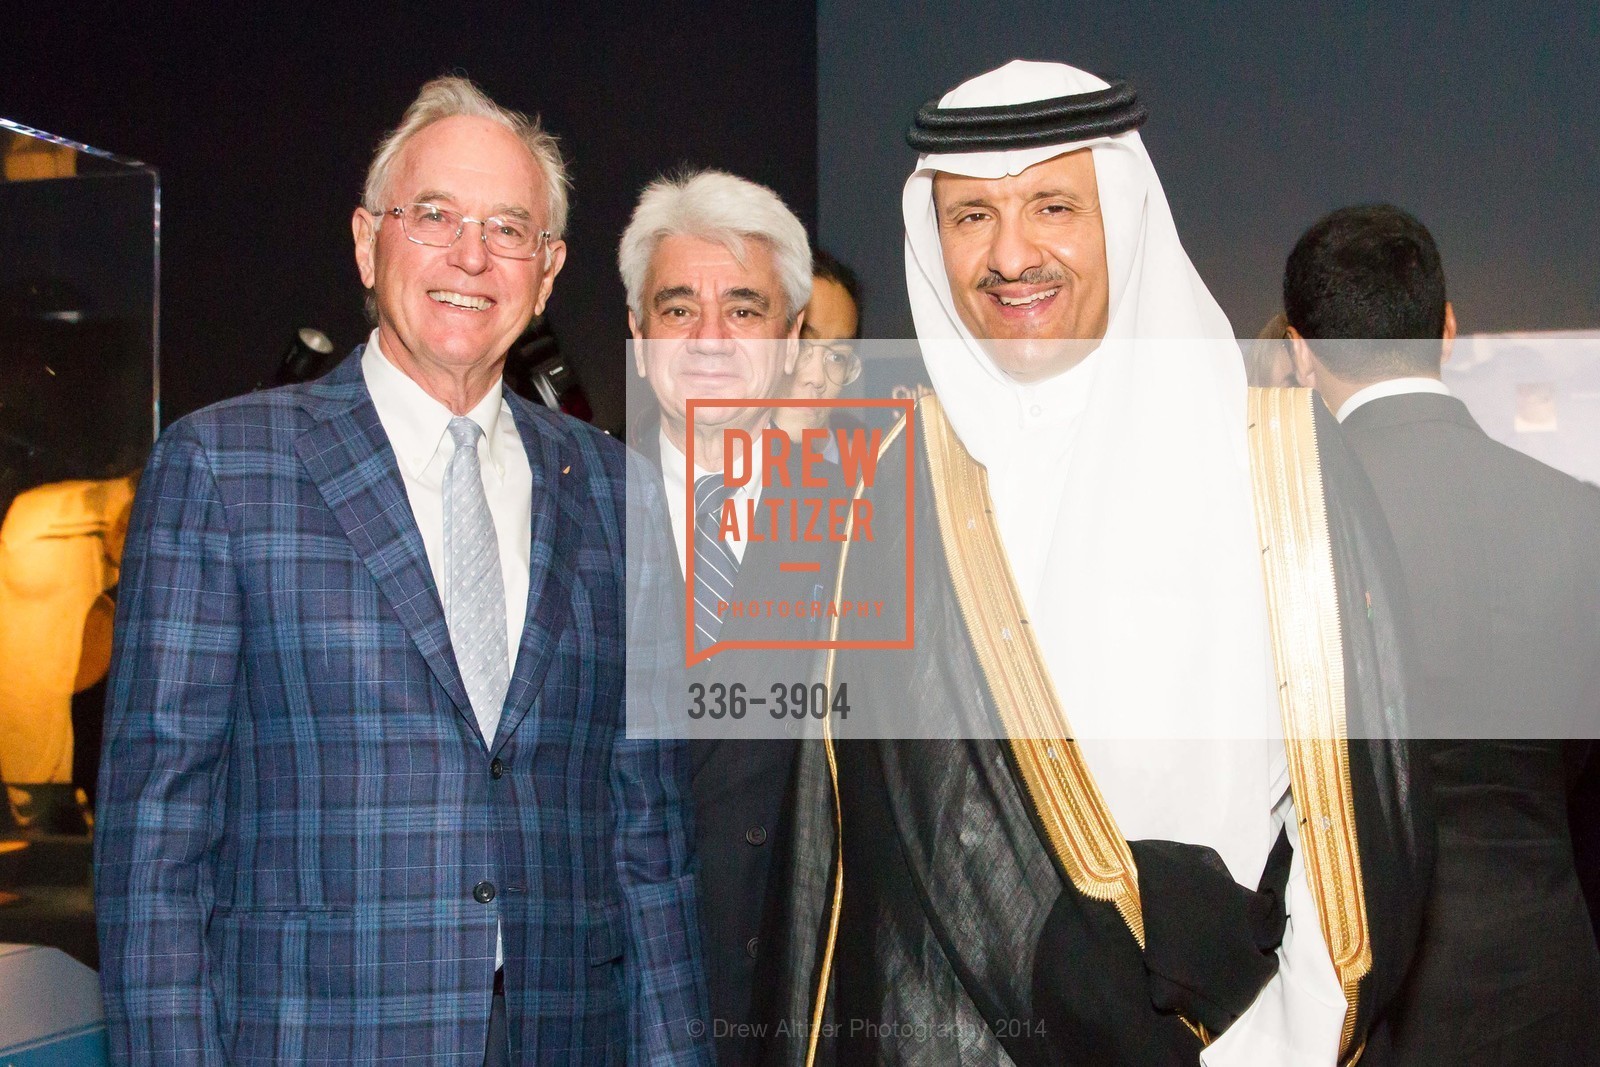 Joe Clark, David Sulzberger, Bin Salma Bin Abdulaziz Al Saud, Photo #336-3904